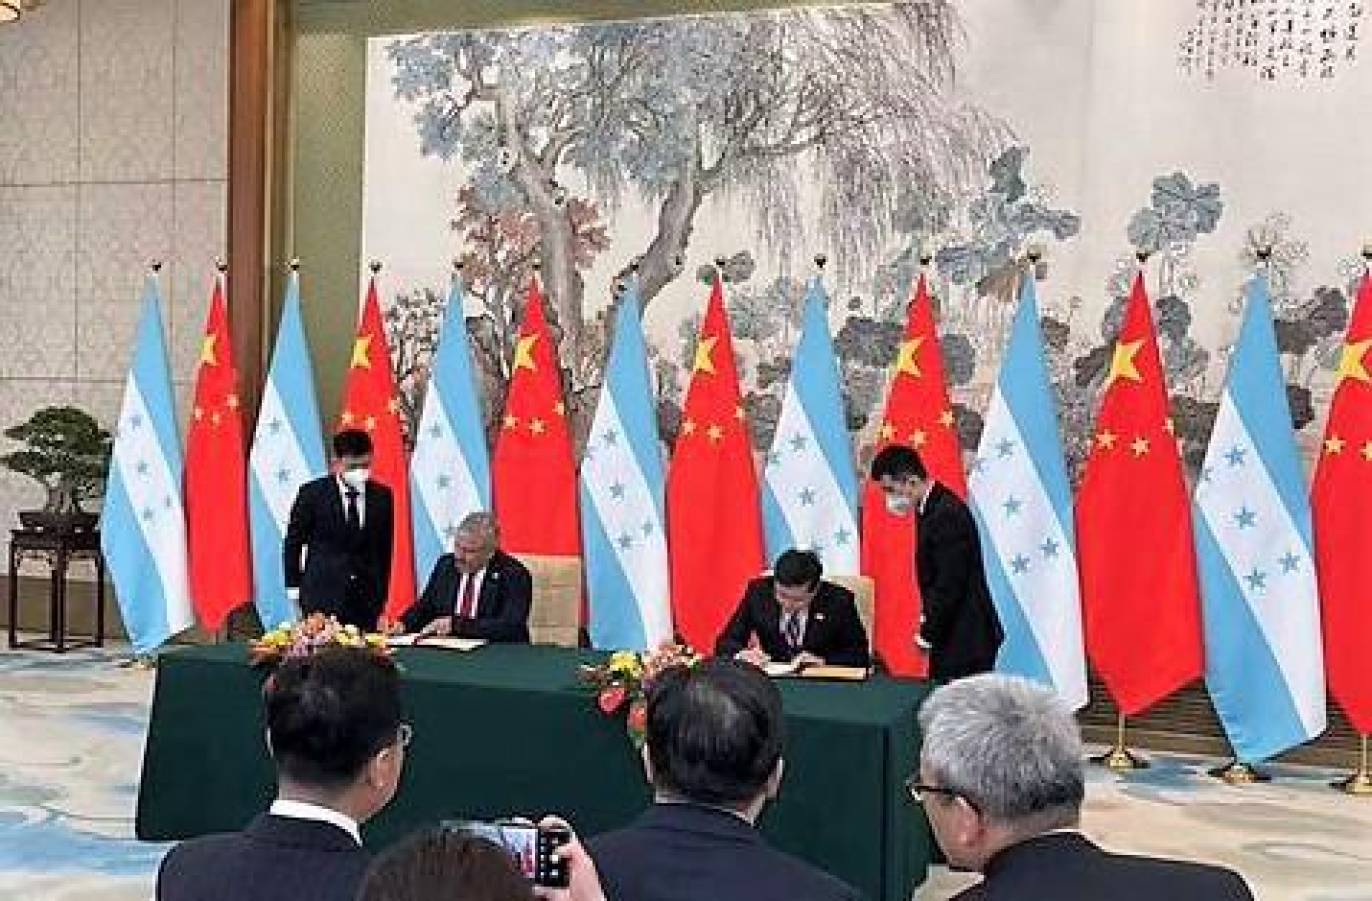 China instalará su embajada en Honduras a comienzos de mayo